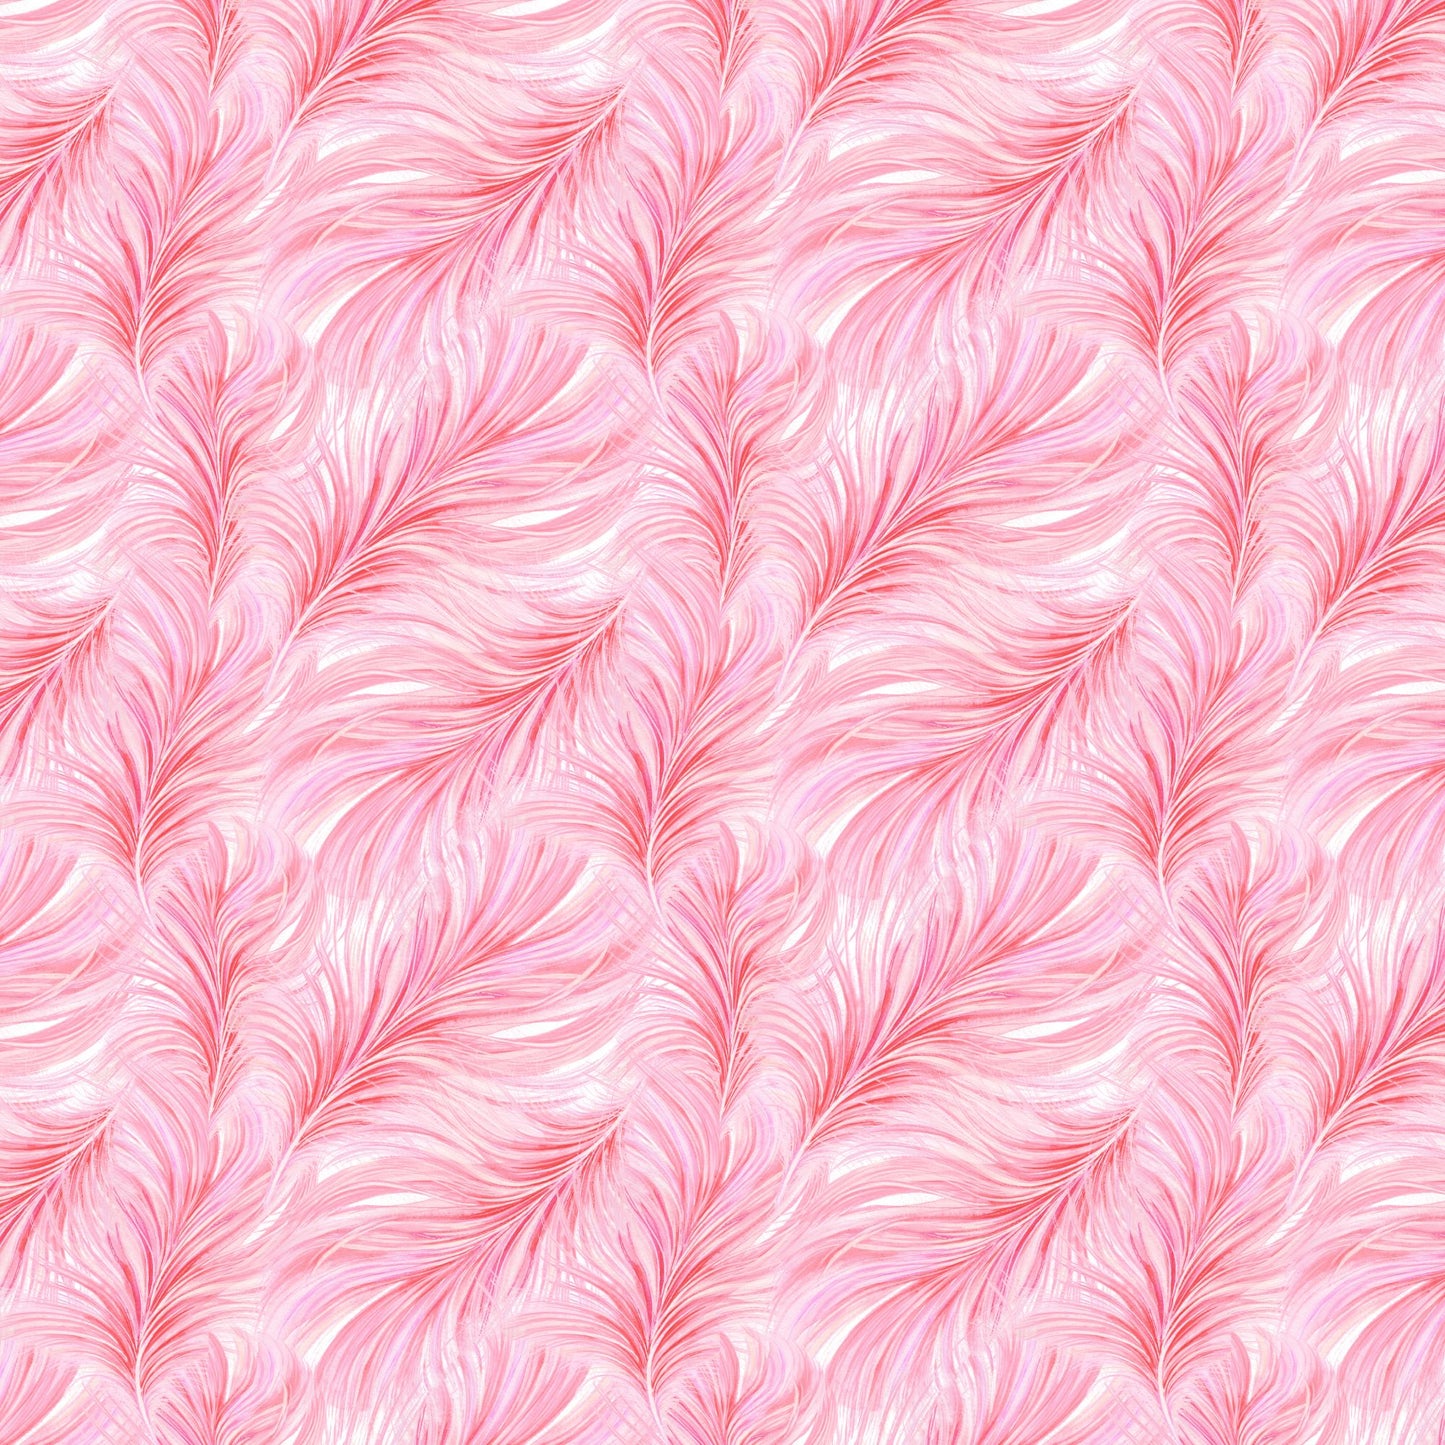 Flamingo Feathers - Adhesive Vinyl